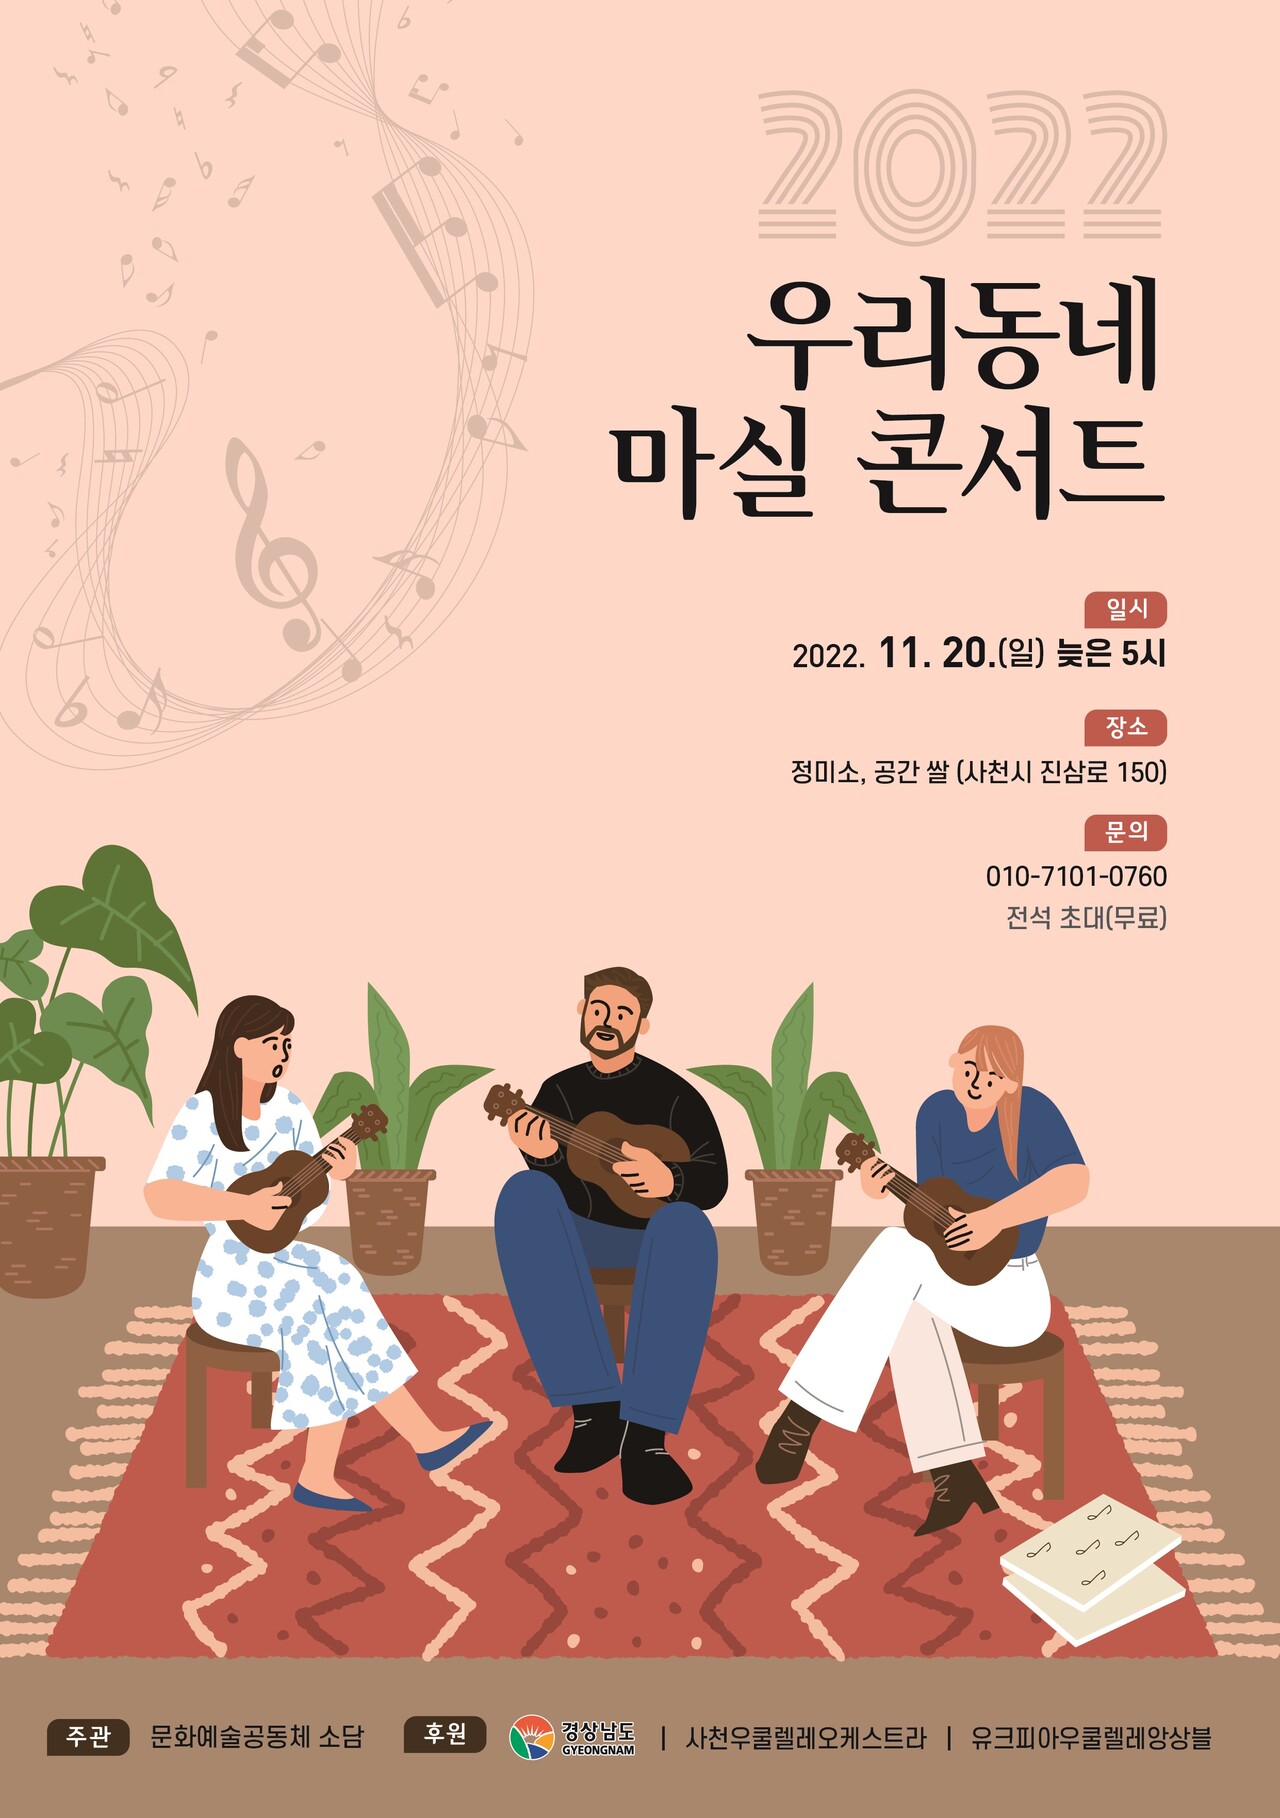  문화예술공동체 소담(대표 박재완)이 오는 11월 20일 오후 5시 남양동 카페 정미소(갤러리쌀)에서 2022 우리동네 마실 콘서트를 연다.